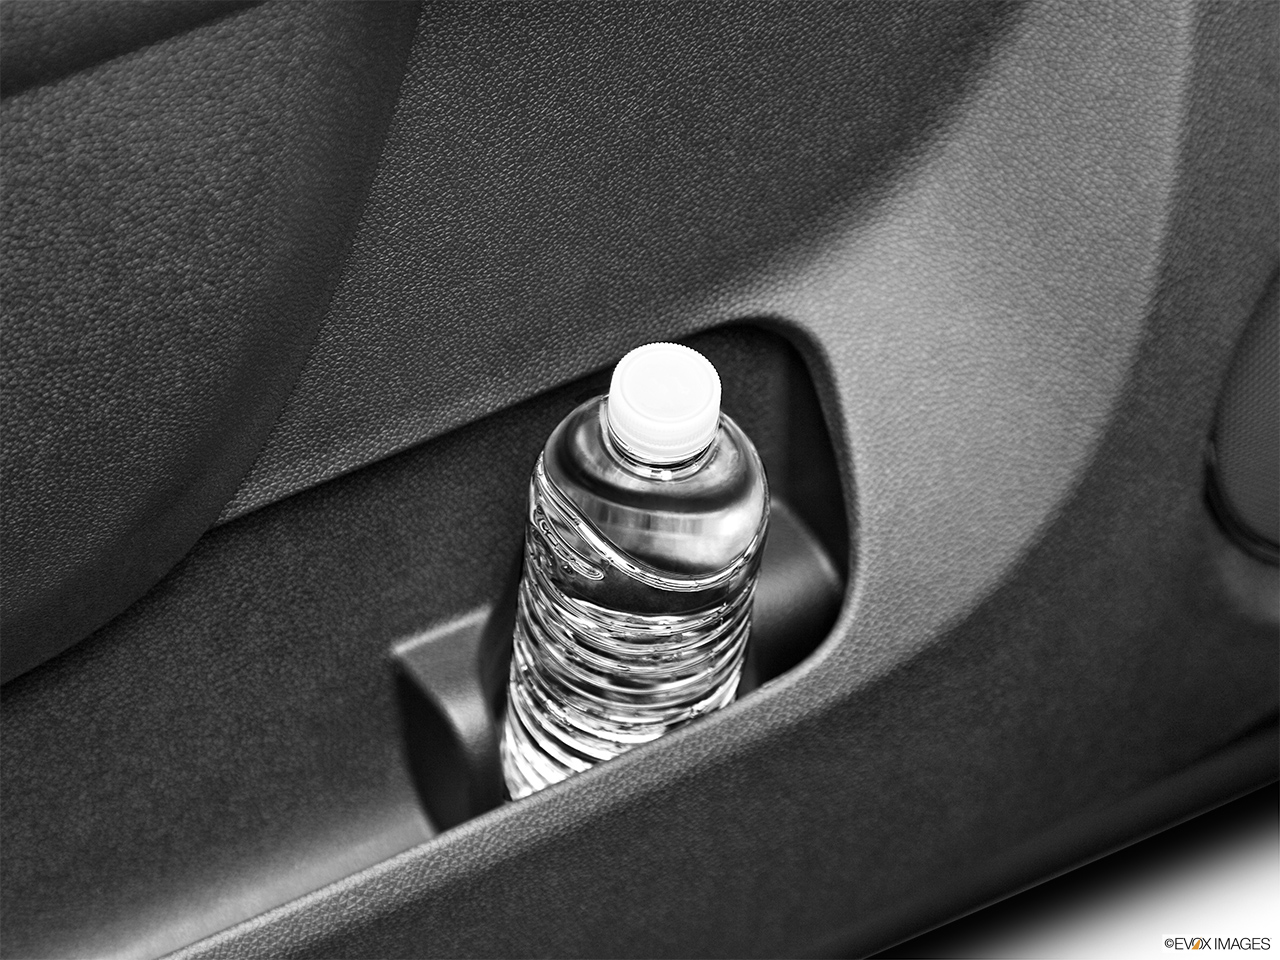 2012 Cadillac Escalade Hybrid Base Cup holder prop (tertiary). 